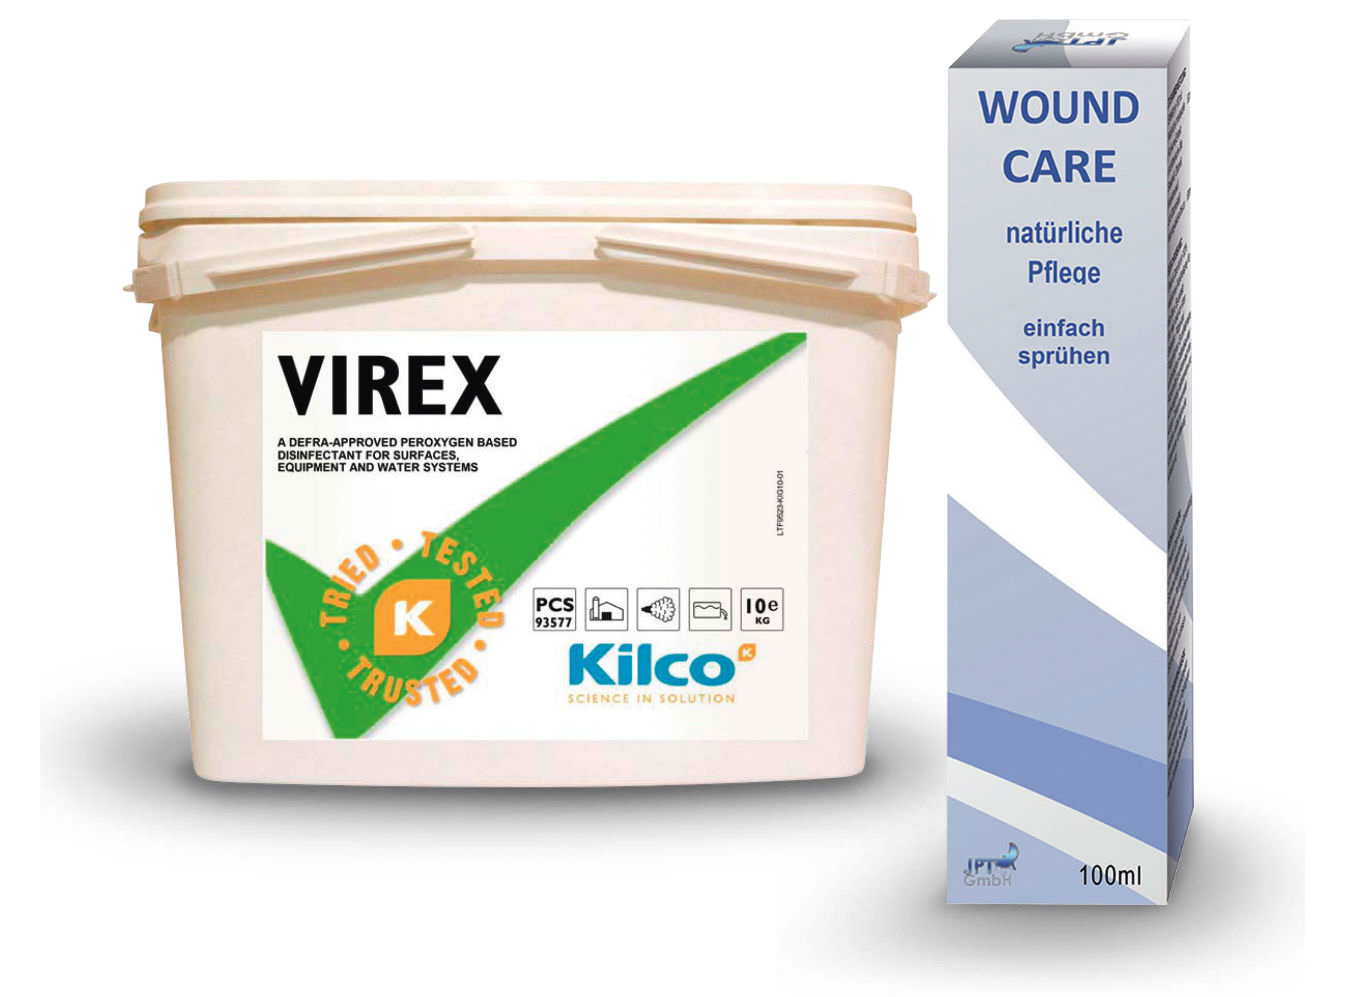 Gratis Tube Wound Care und 10 Kg Eimer Virex